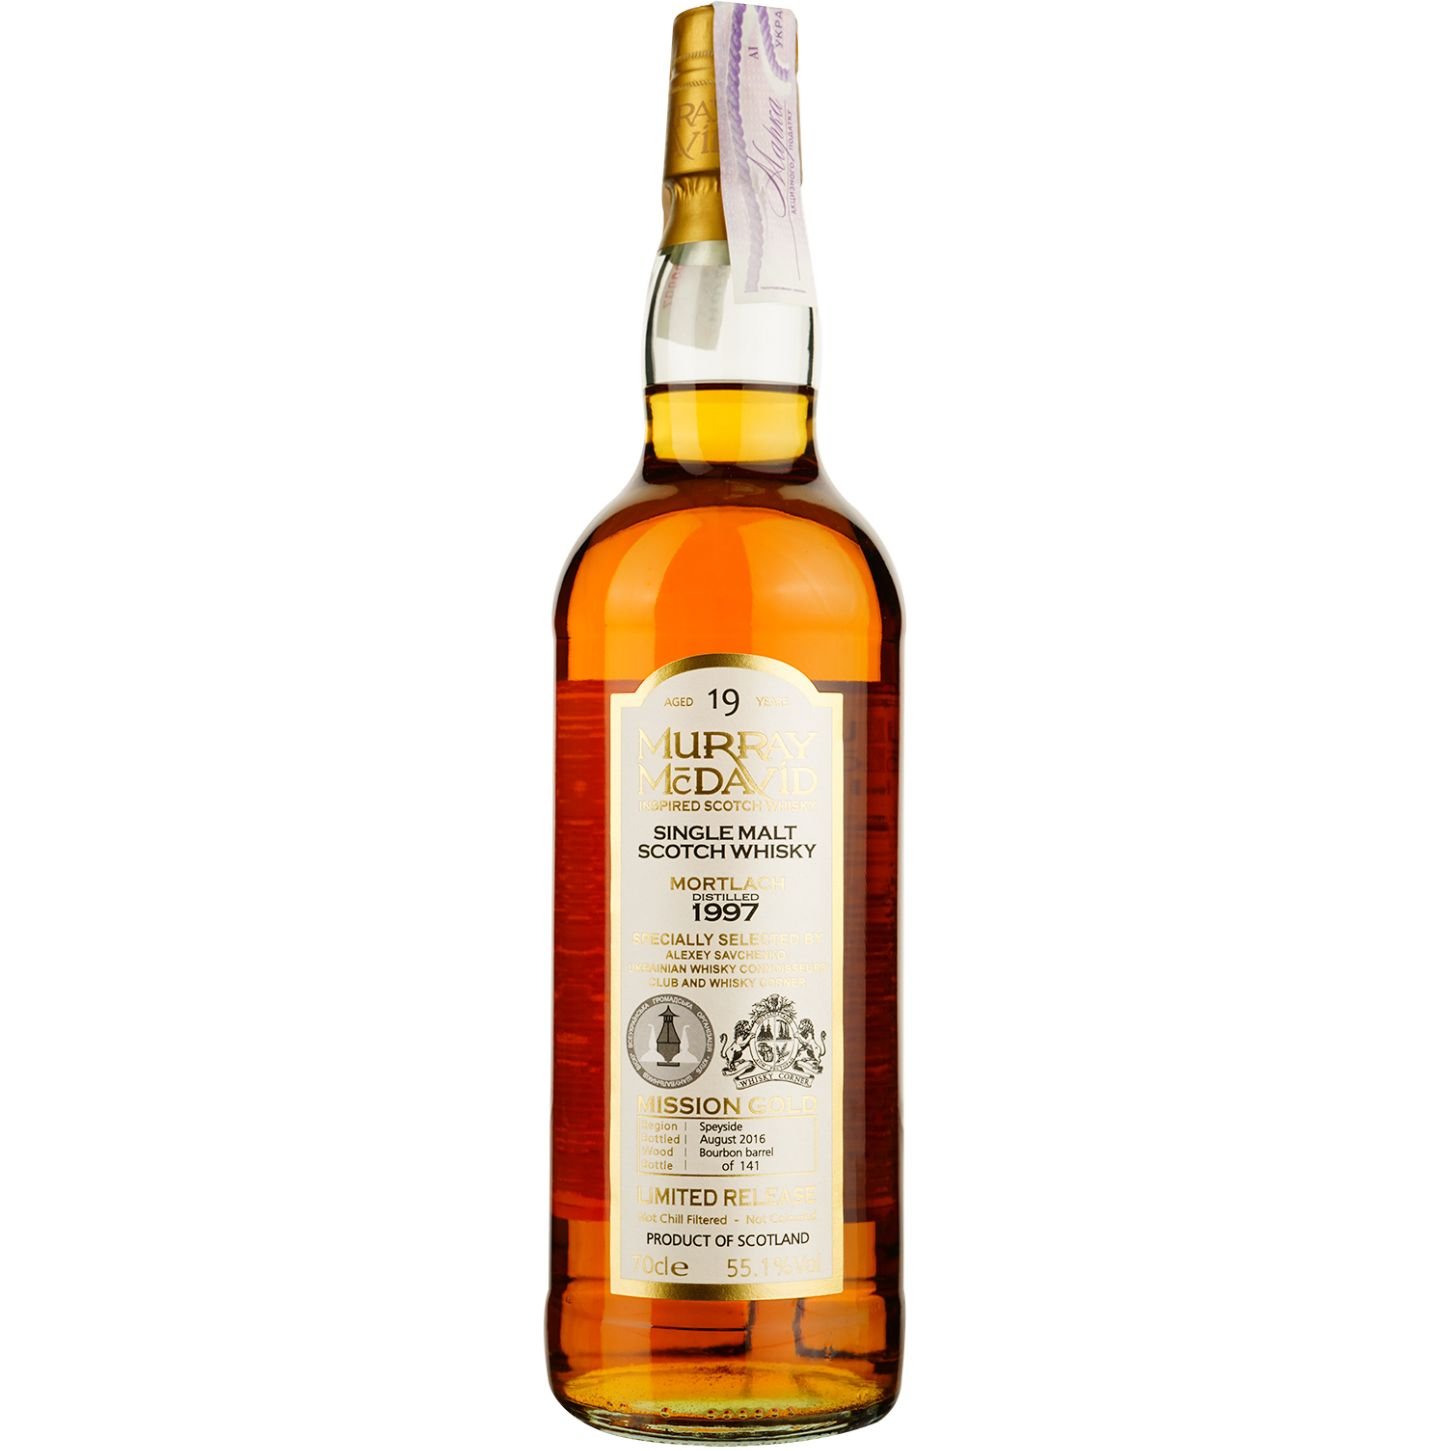 Віскі Mortlach Murray McDavid 19 Years Old Single Malt Scotch Whisky, у подарунковій упаковці, 55,1%, 0,7 л - фото 2